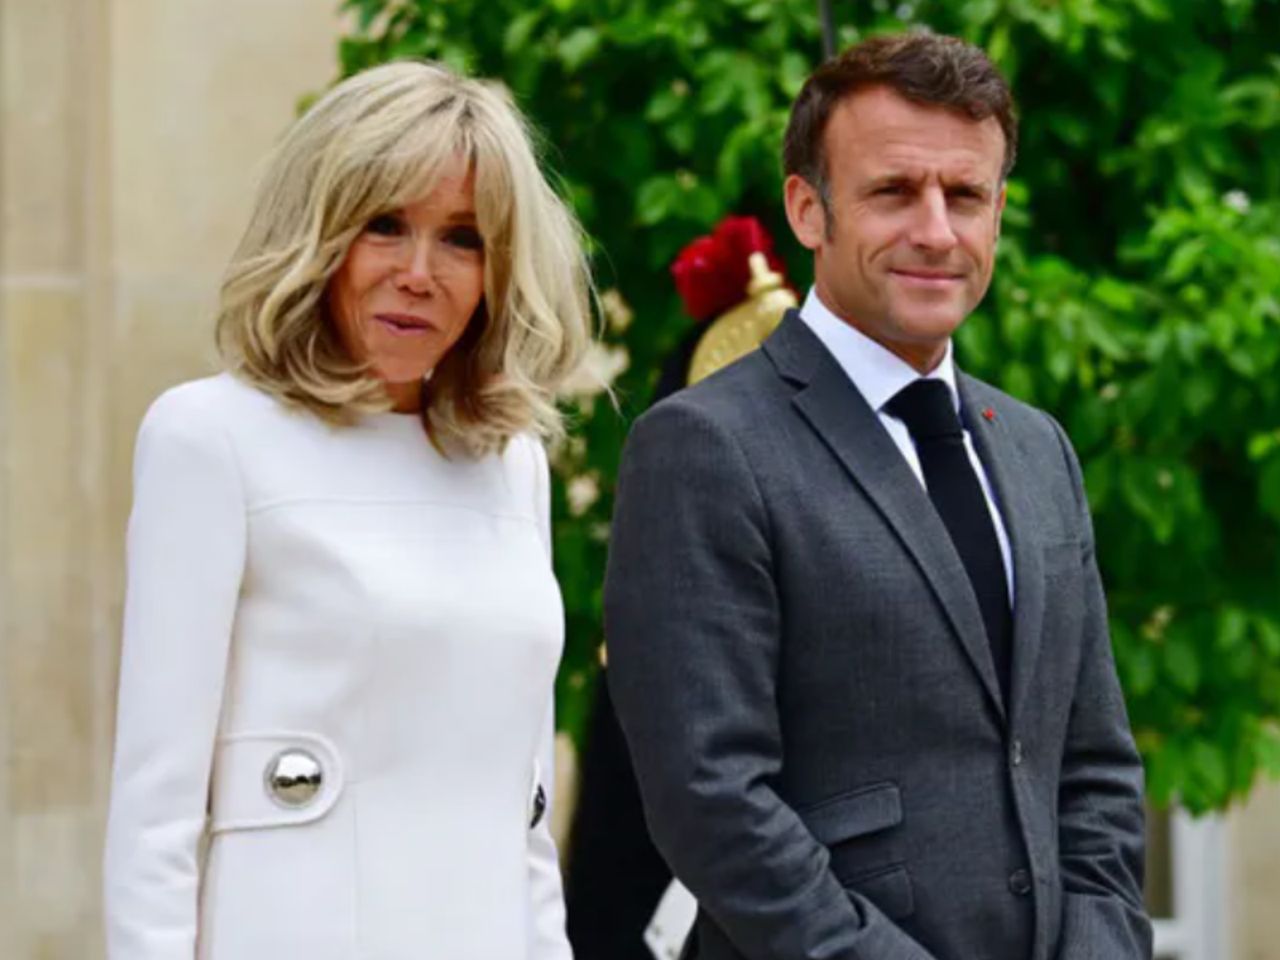 Emmanuel Macron uciął plotki dotyczące jego żony